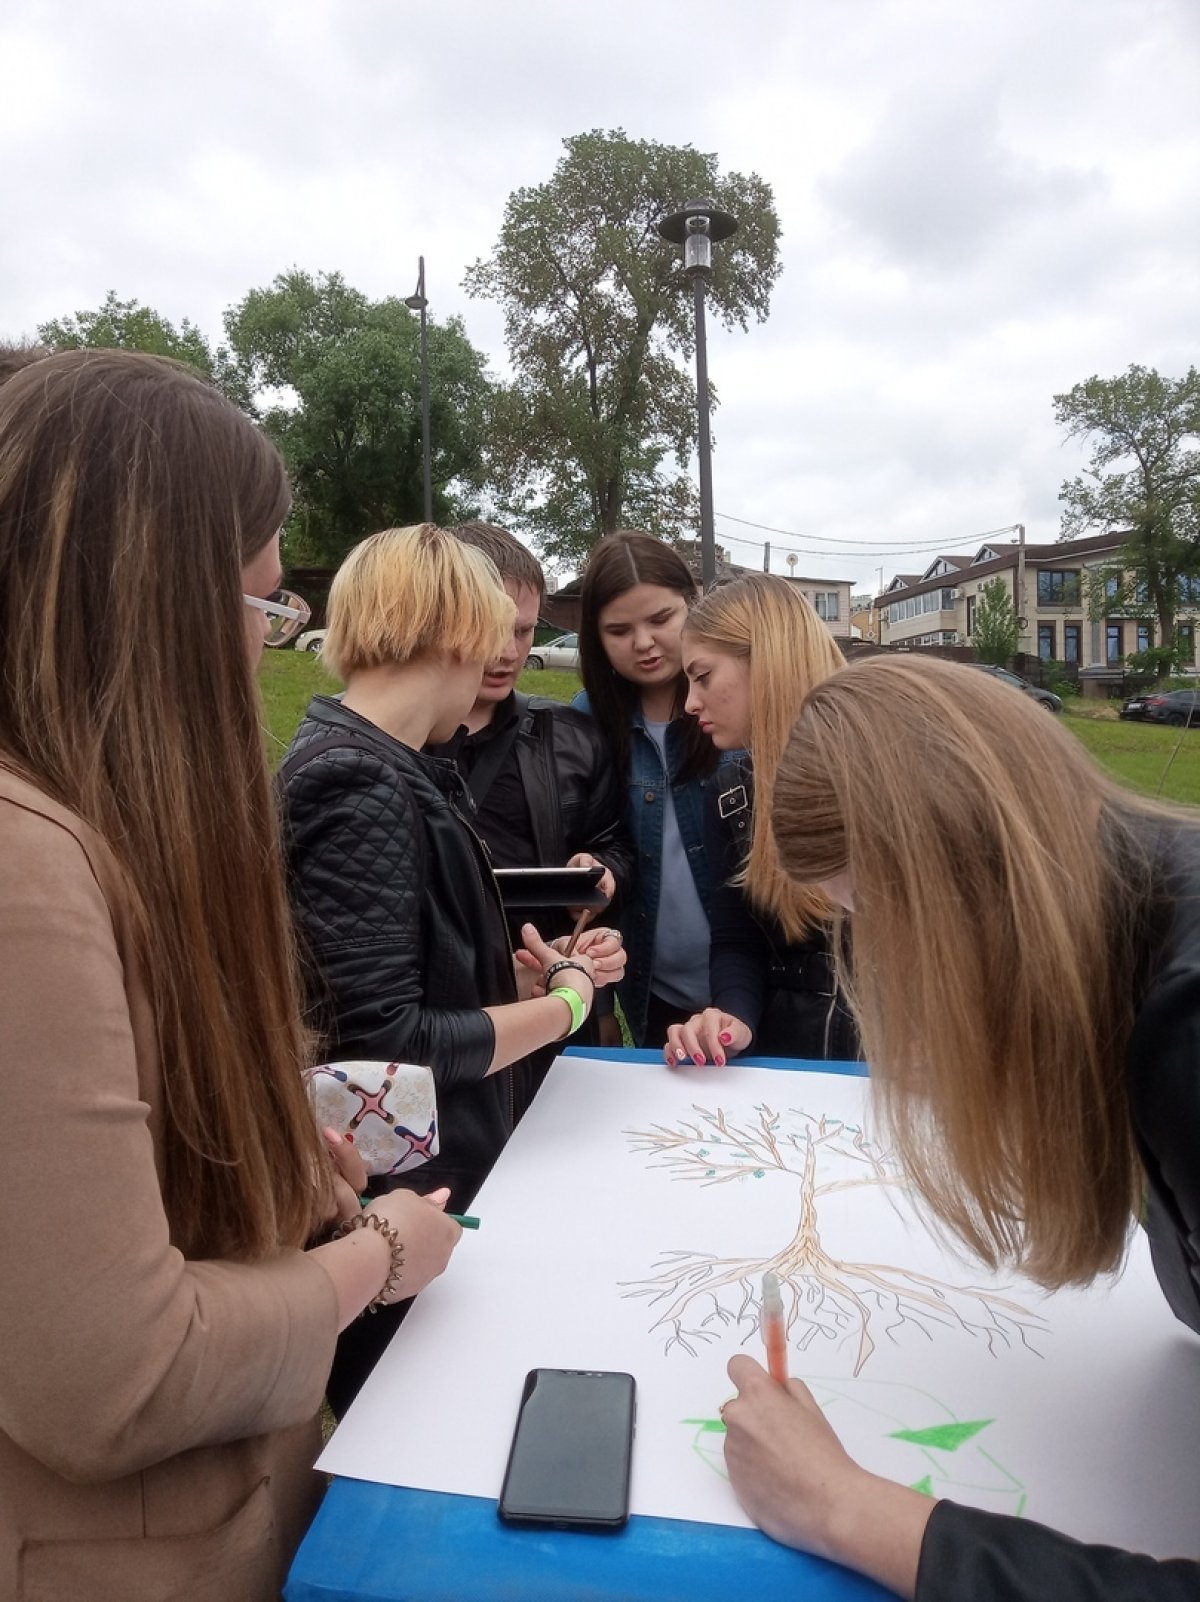 Сегодня группа студентов университета побывала на бизнес-пикнике в липецком Городище. Участвовали в квесте и в мастер-классах